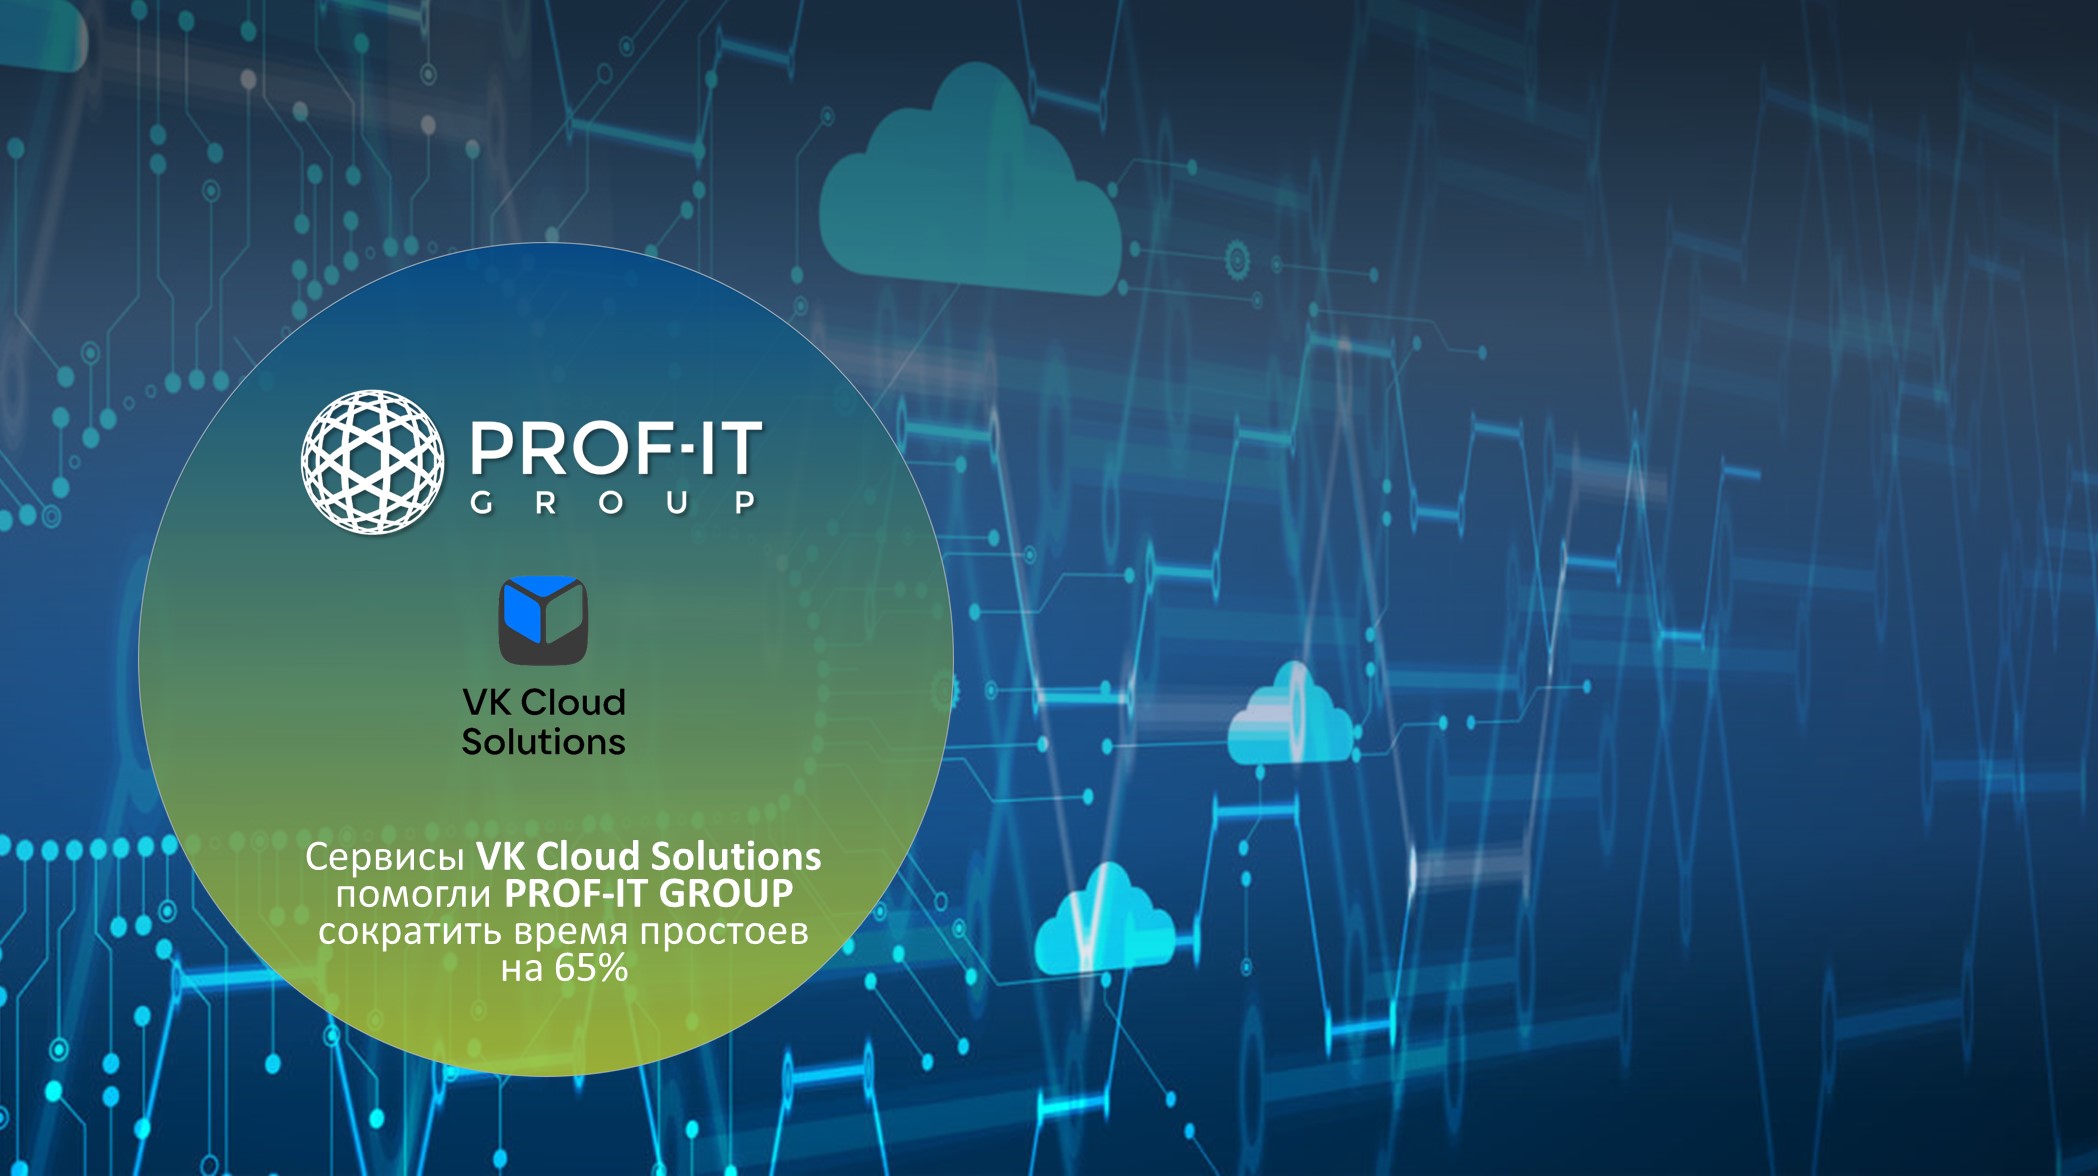 Сервисы VK Cloud Solutions помогли PROF-IT GROUP сократить время простоев на 65%